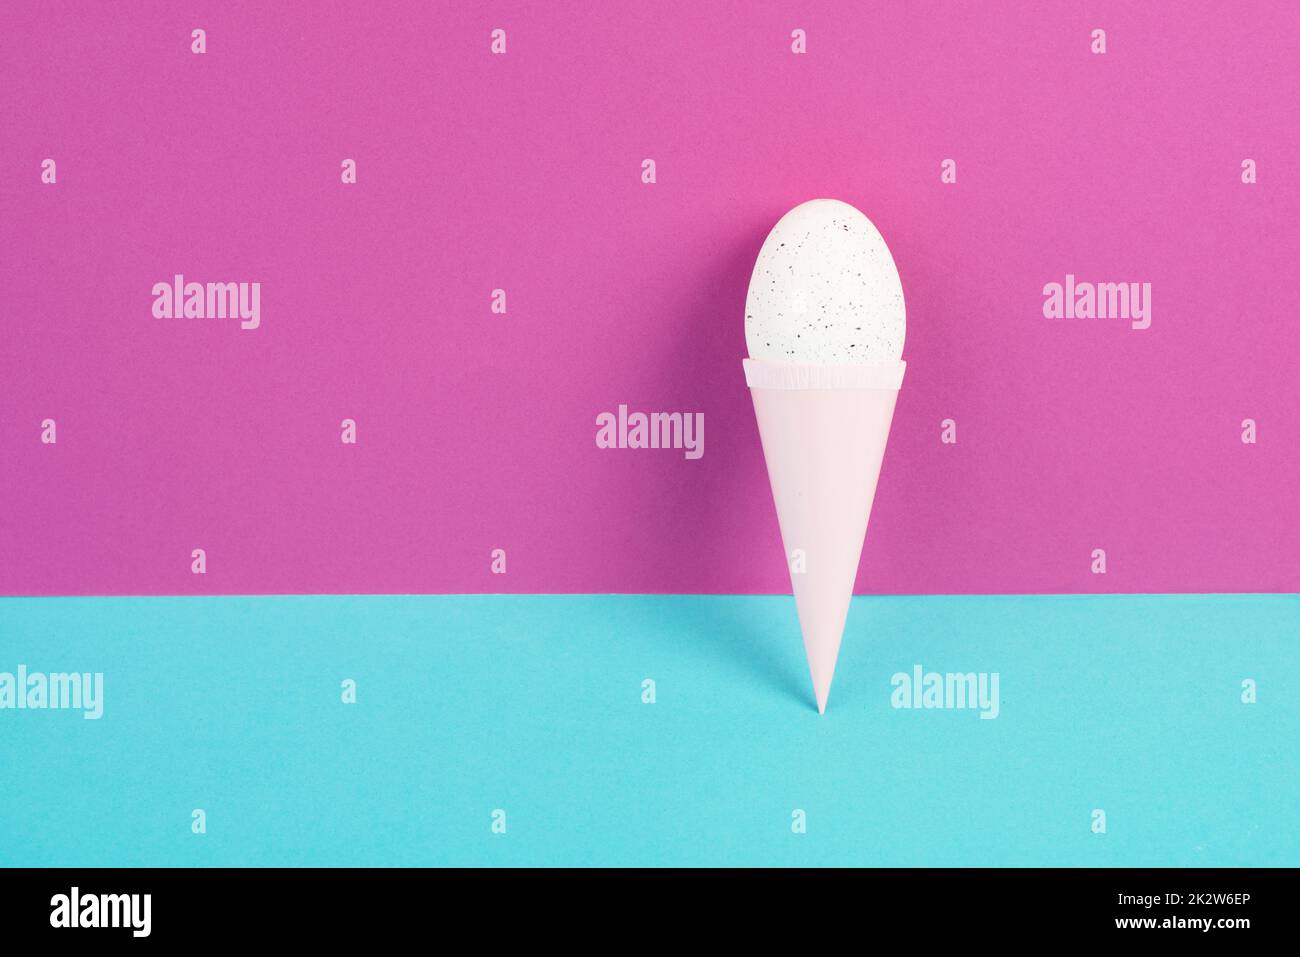 Cône de crème glacée avec un oeuf, fond rose et bleu, espace de copie, vacances de pâques, saison d'été, concept minimaliste et créatif, carte de voeux Banque D'Images